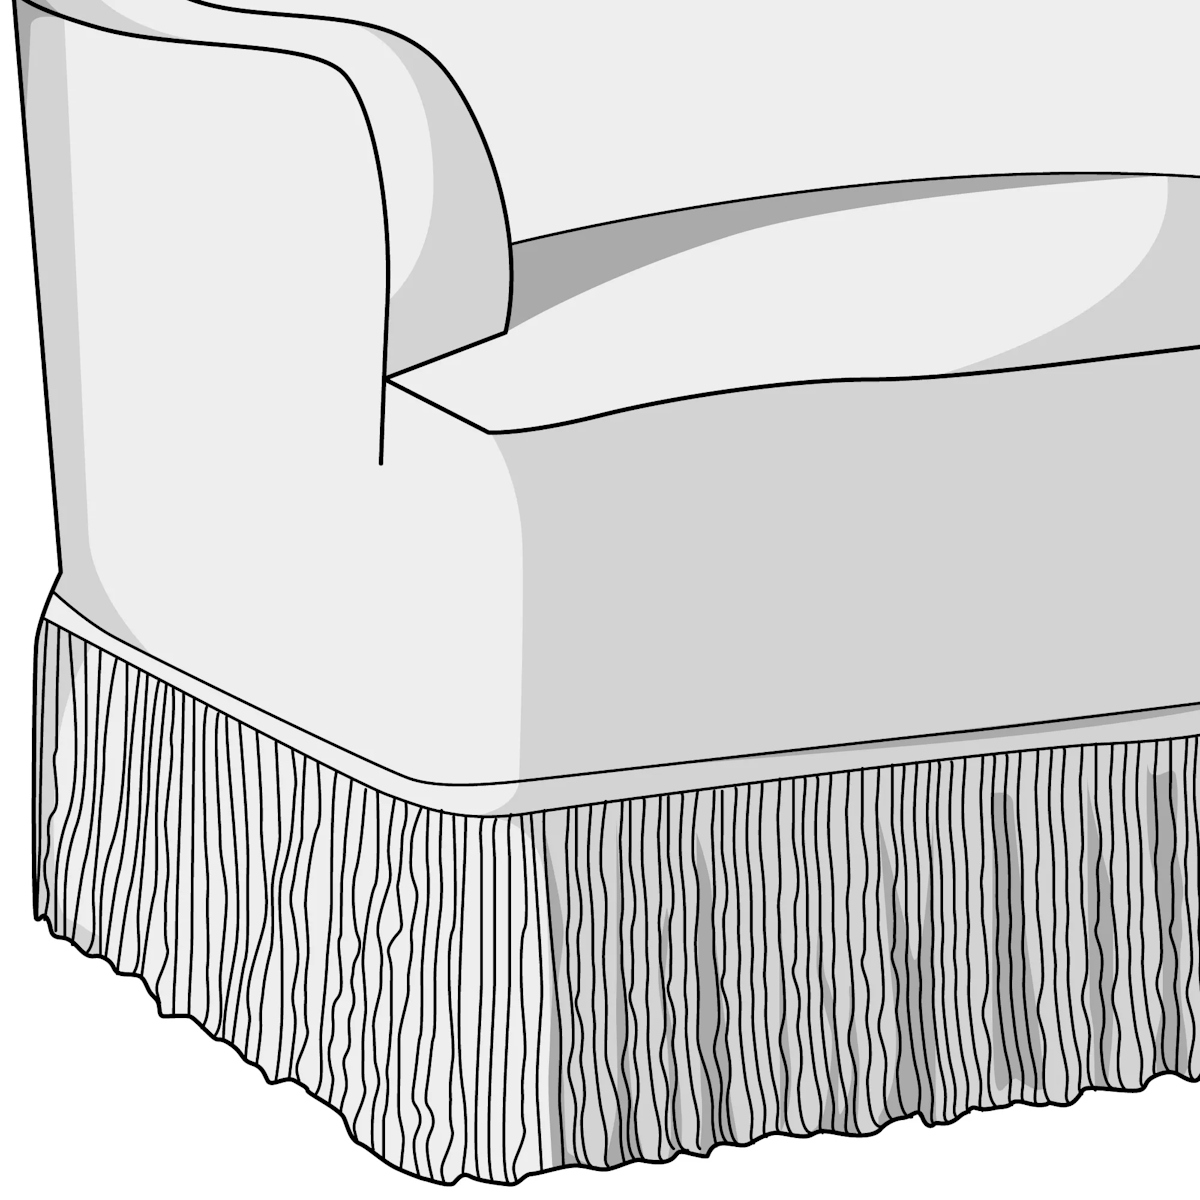 Upholstery illustration featuring fringe trim on luxury sofa